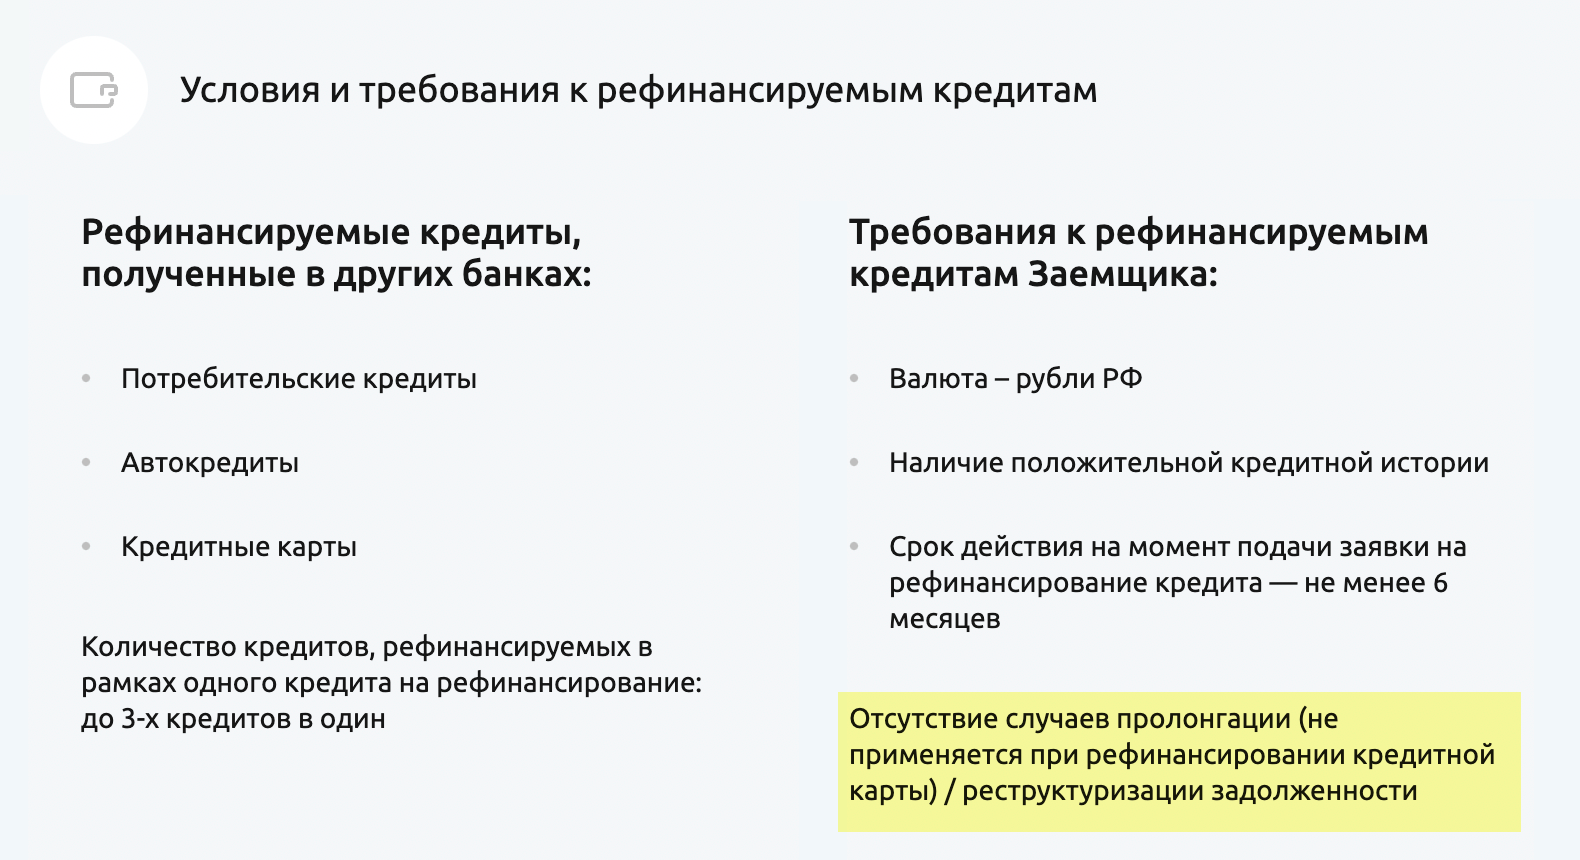 На сайте «Россельхозбанка» в требованиях к рефинансируемым кредитам указано, что на обслуживание не принимаются договоры, по которым была реструктуризация или пролонгация. Источник: retail.rshb.ru